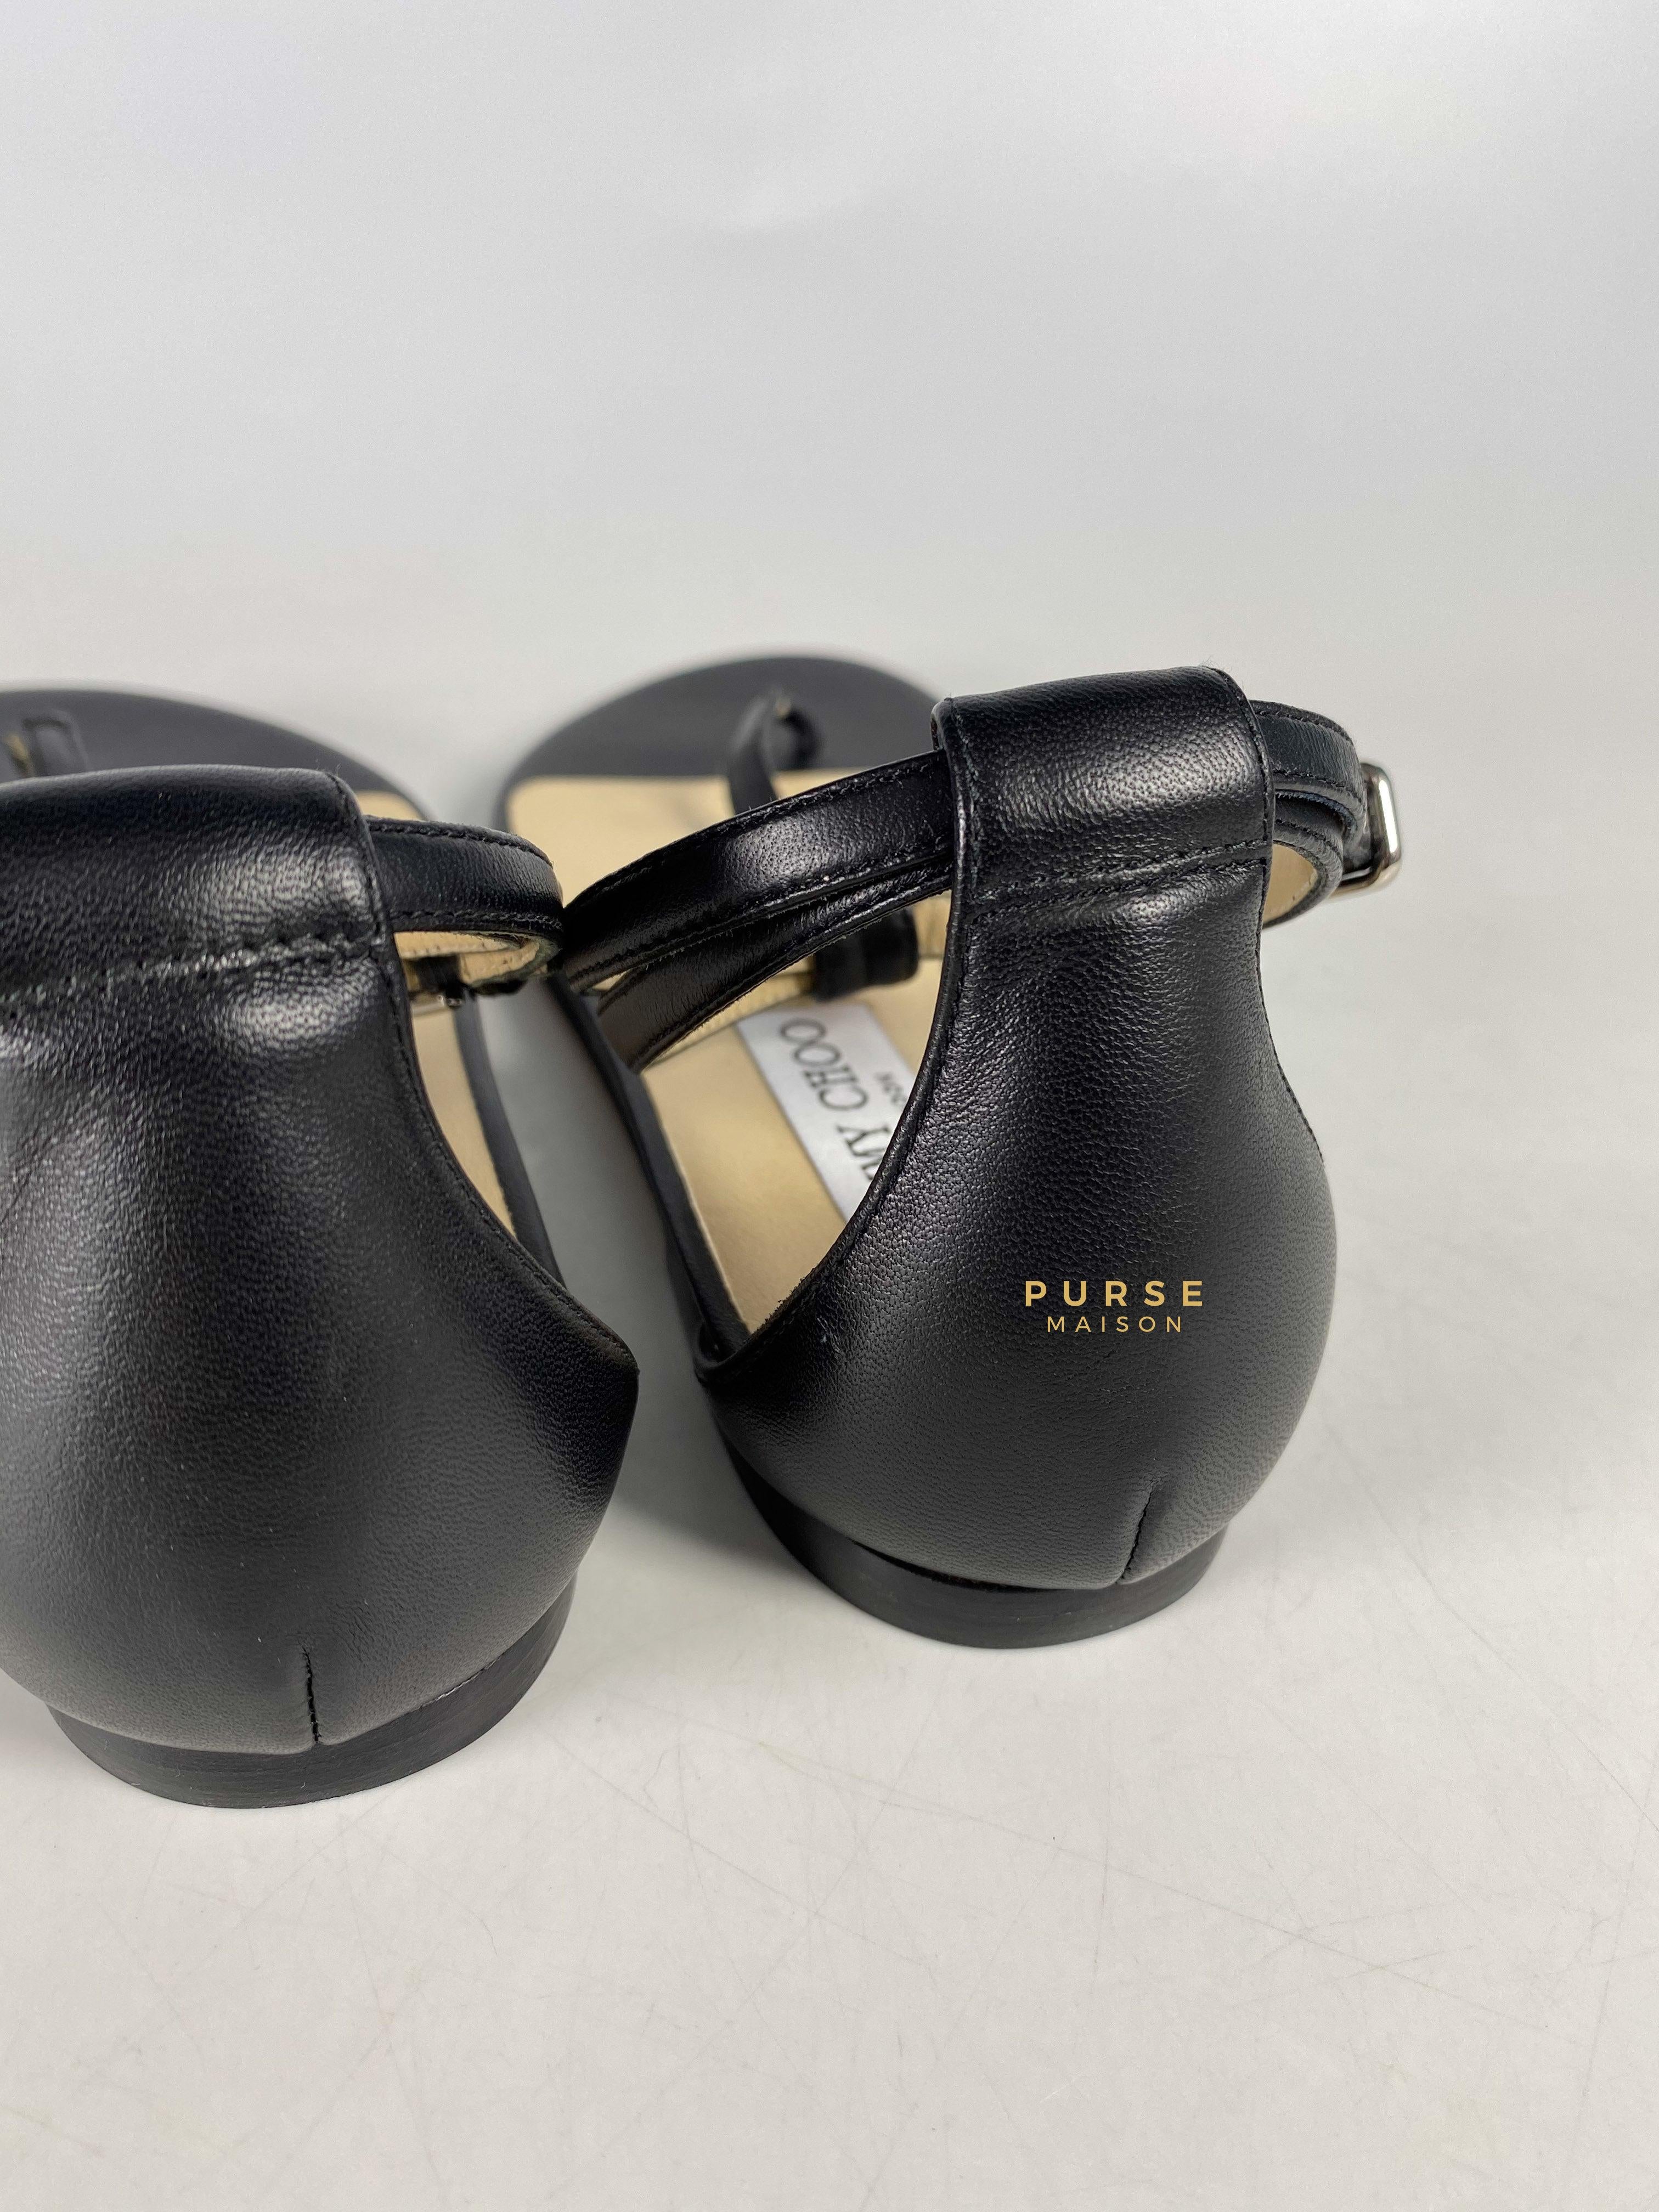 Jimmy Choo Black Afia Flat Sandals Size 35 (23cm) | Purse Maison Luxury Bags Shop